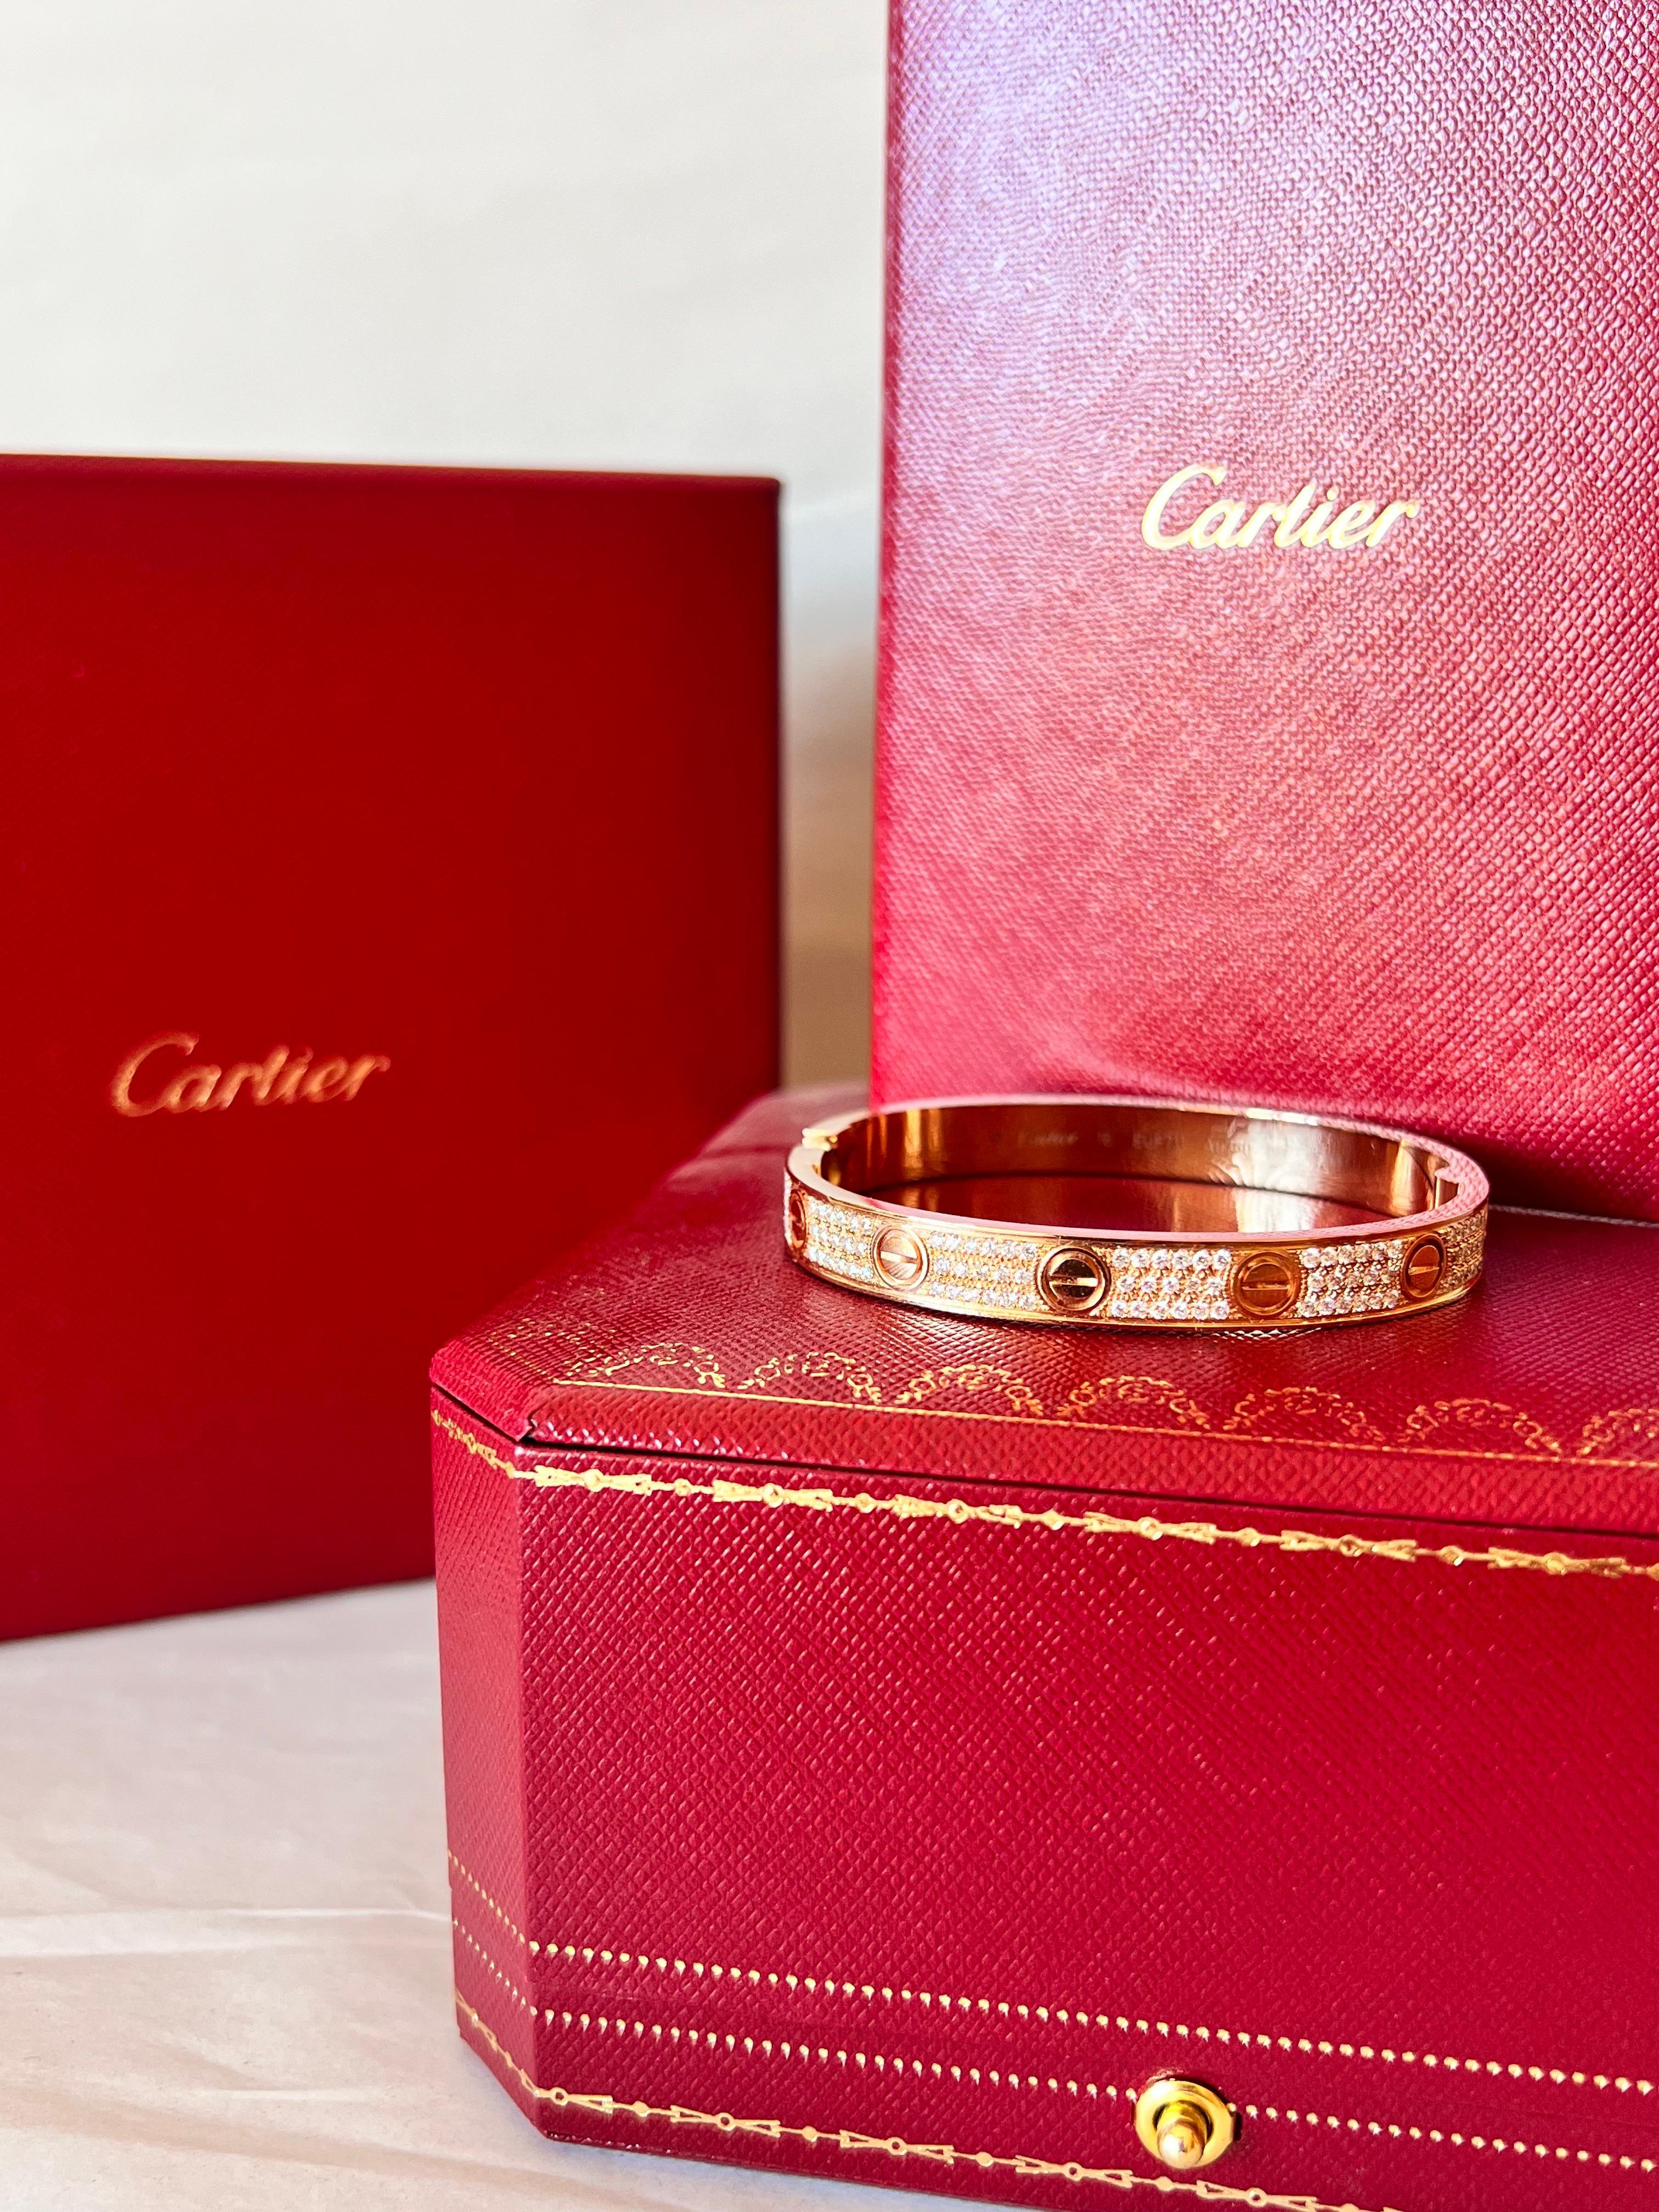 cartier love bracelet with diamonds